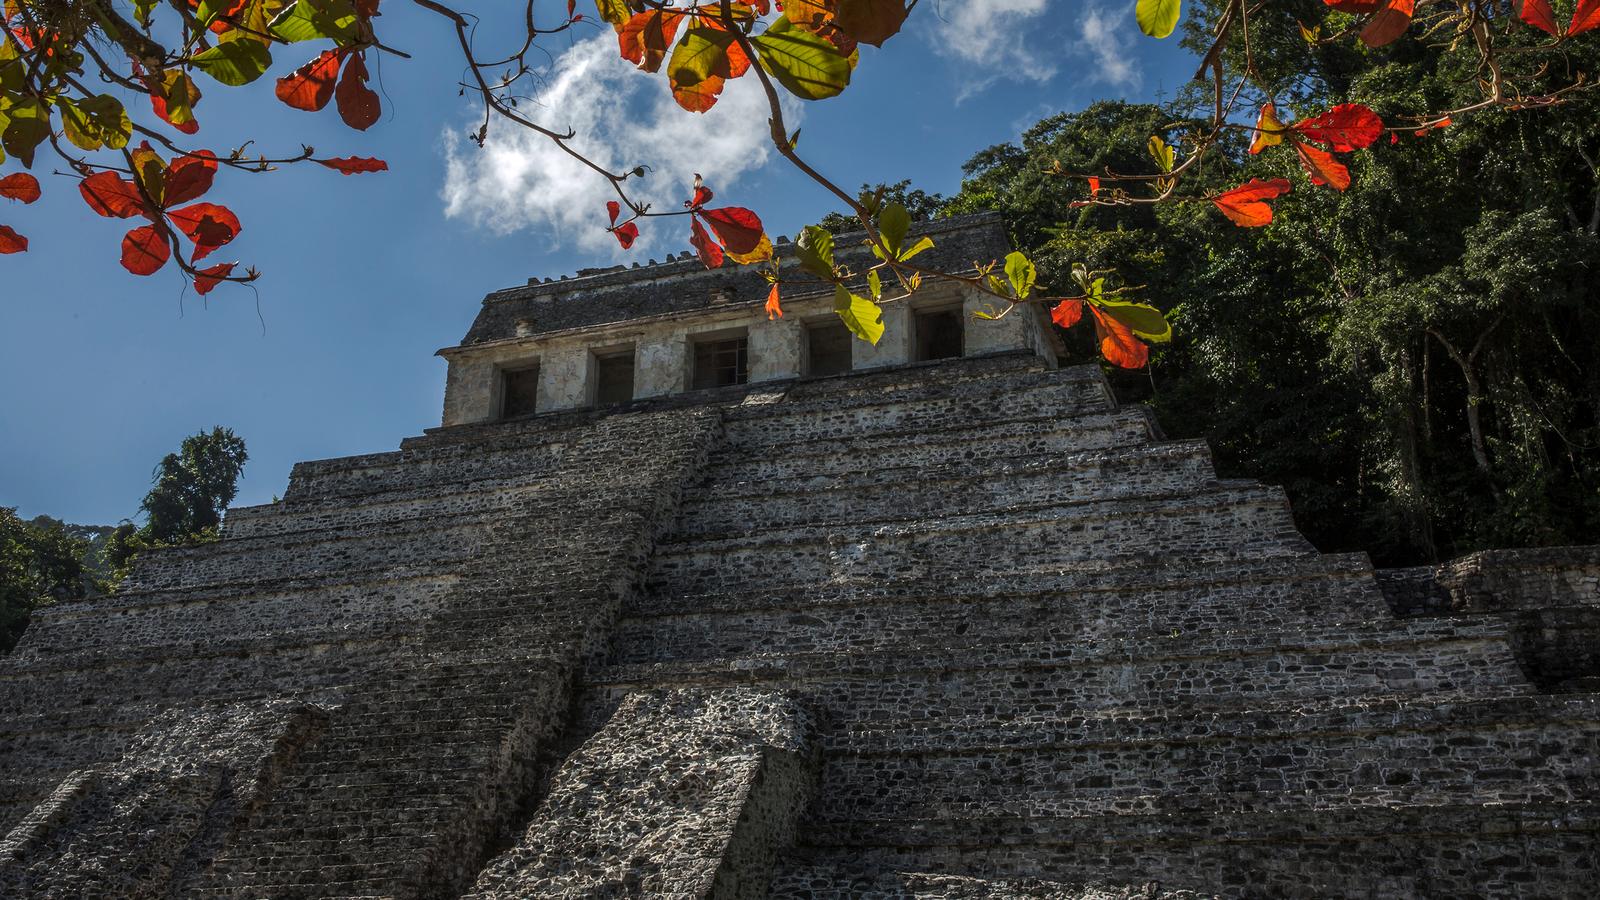 Mayan Trail